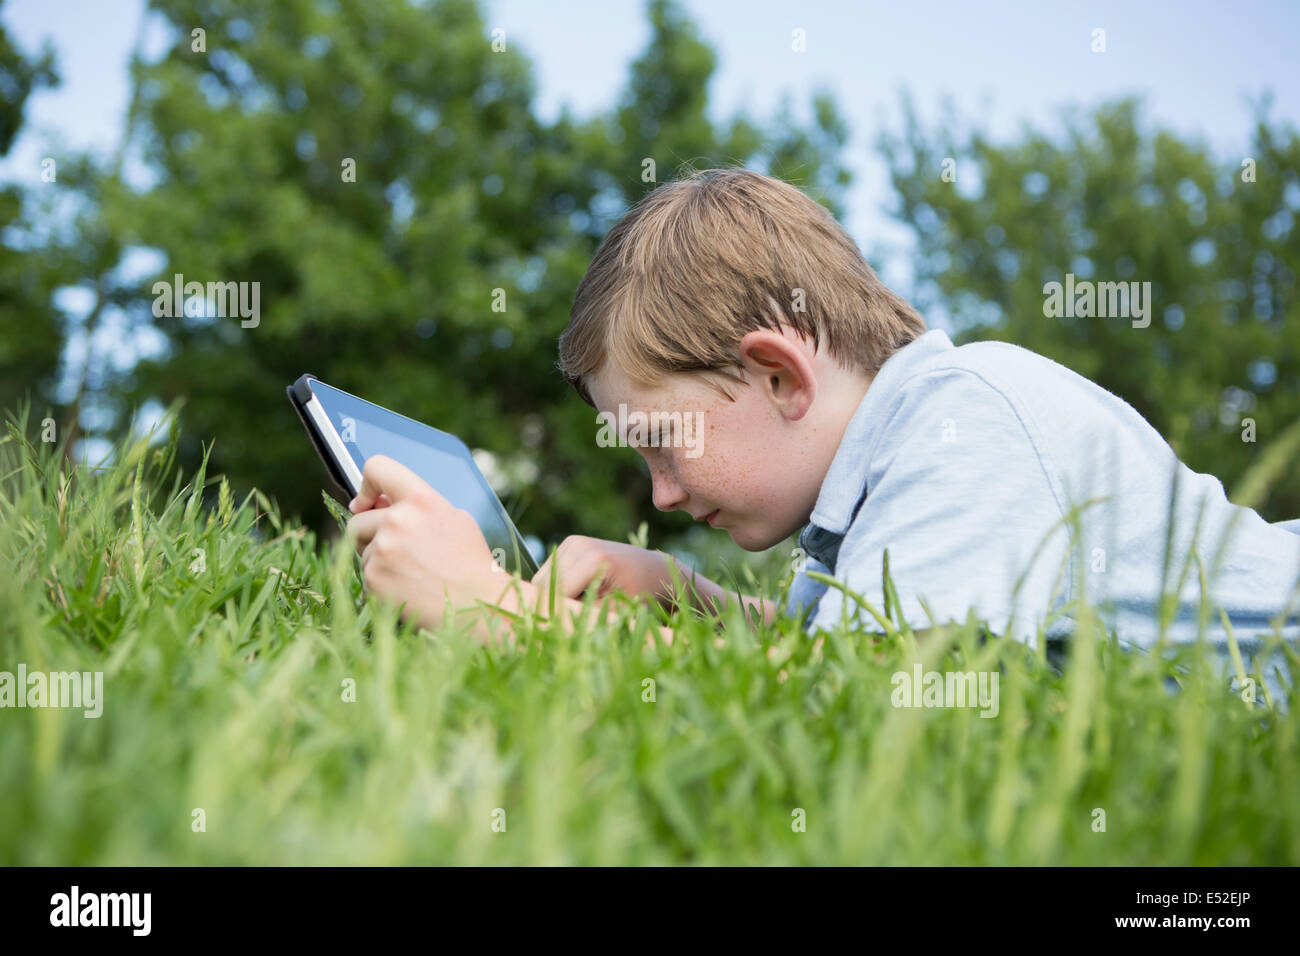 Ein kleiner Junge auf dem Rasen liegend mit einem digitalen Tablet. Stockfoto